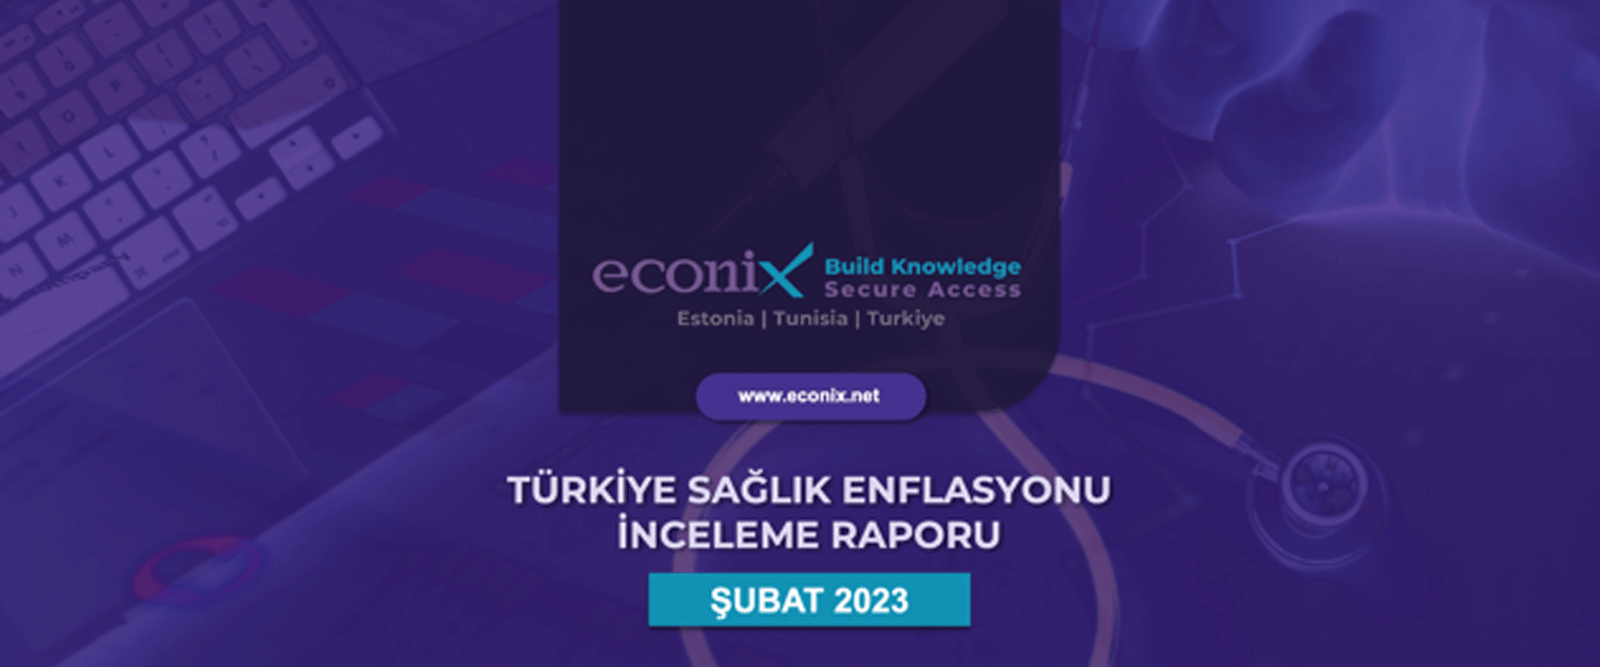 ECONiX Araştırma / Türkiye Sağlık Enflasyonu İnceleme Raporu